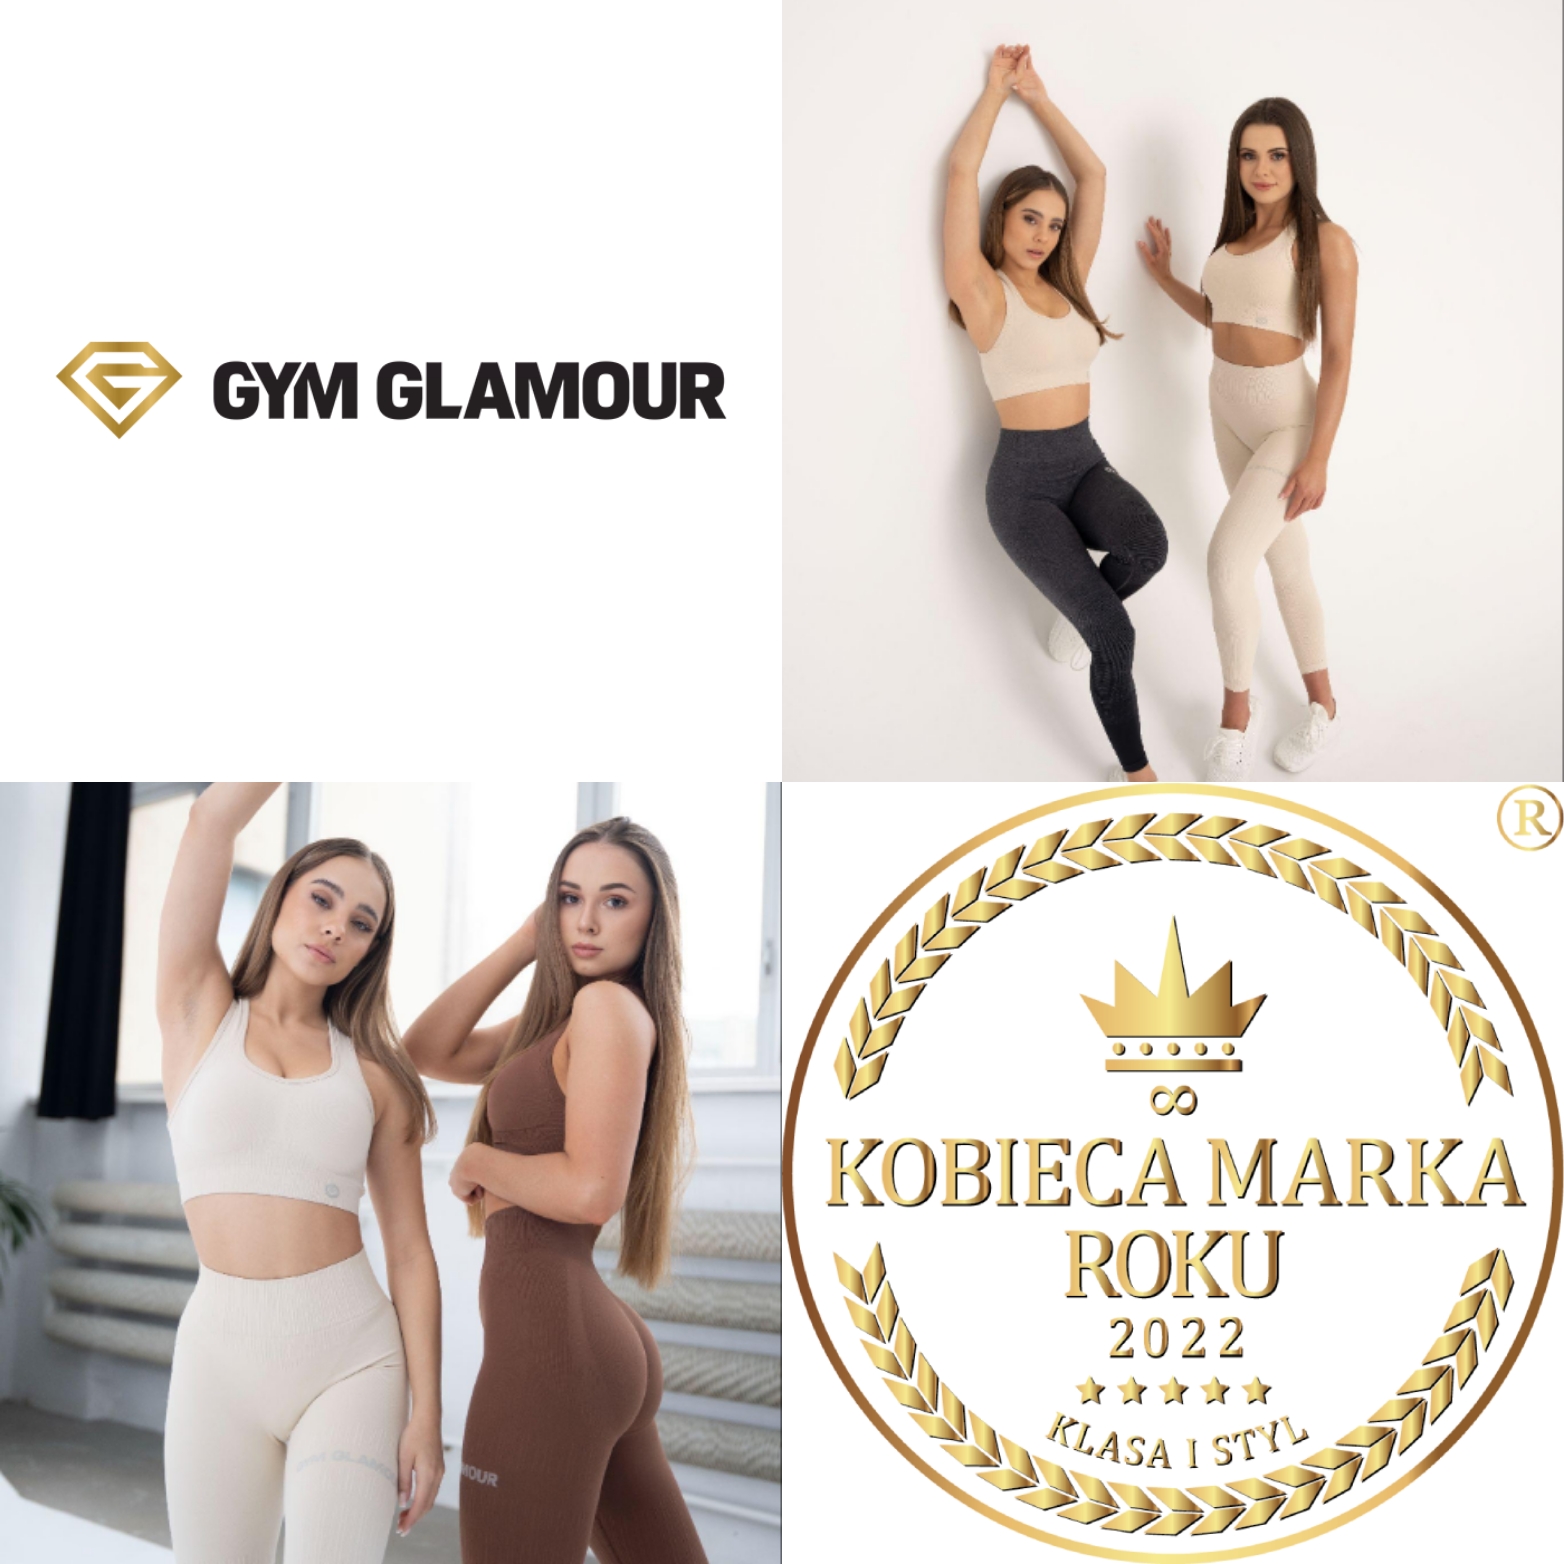 Gym Glamour - najbardziej kobieca i sportowa marka w Polsce!